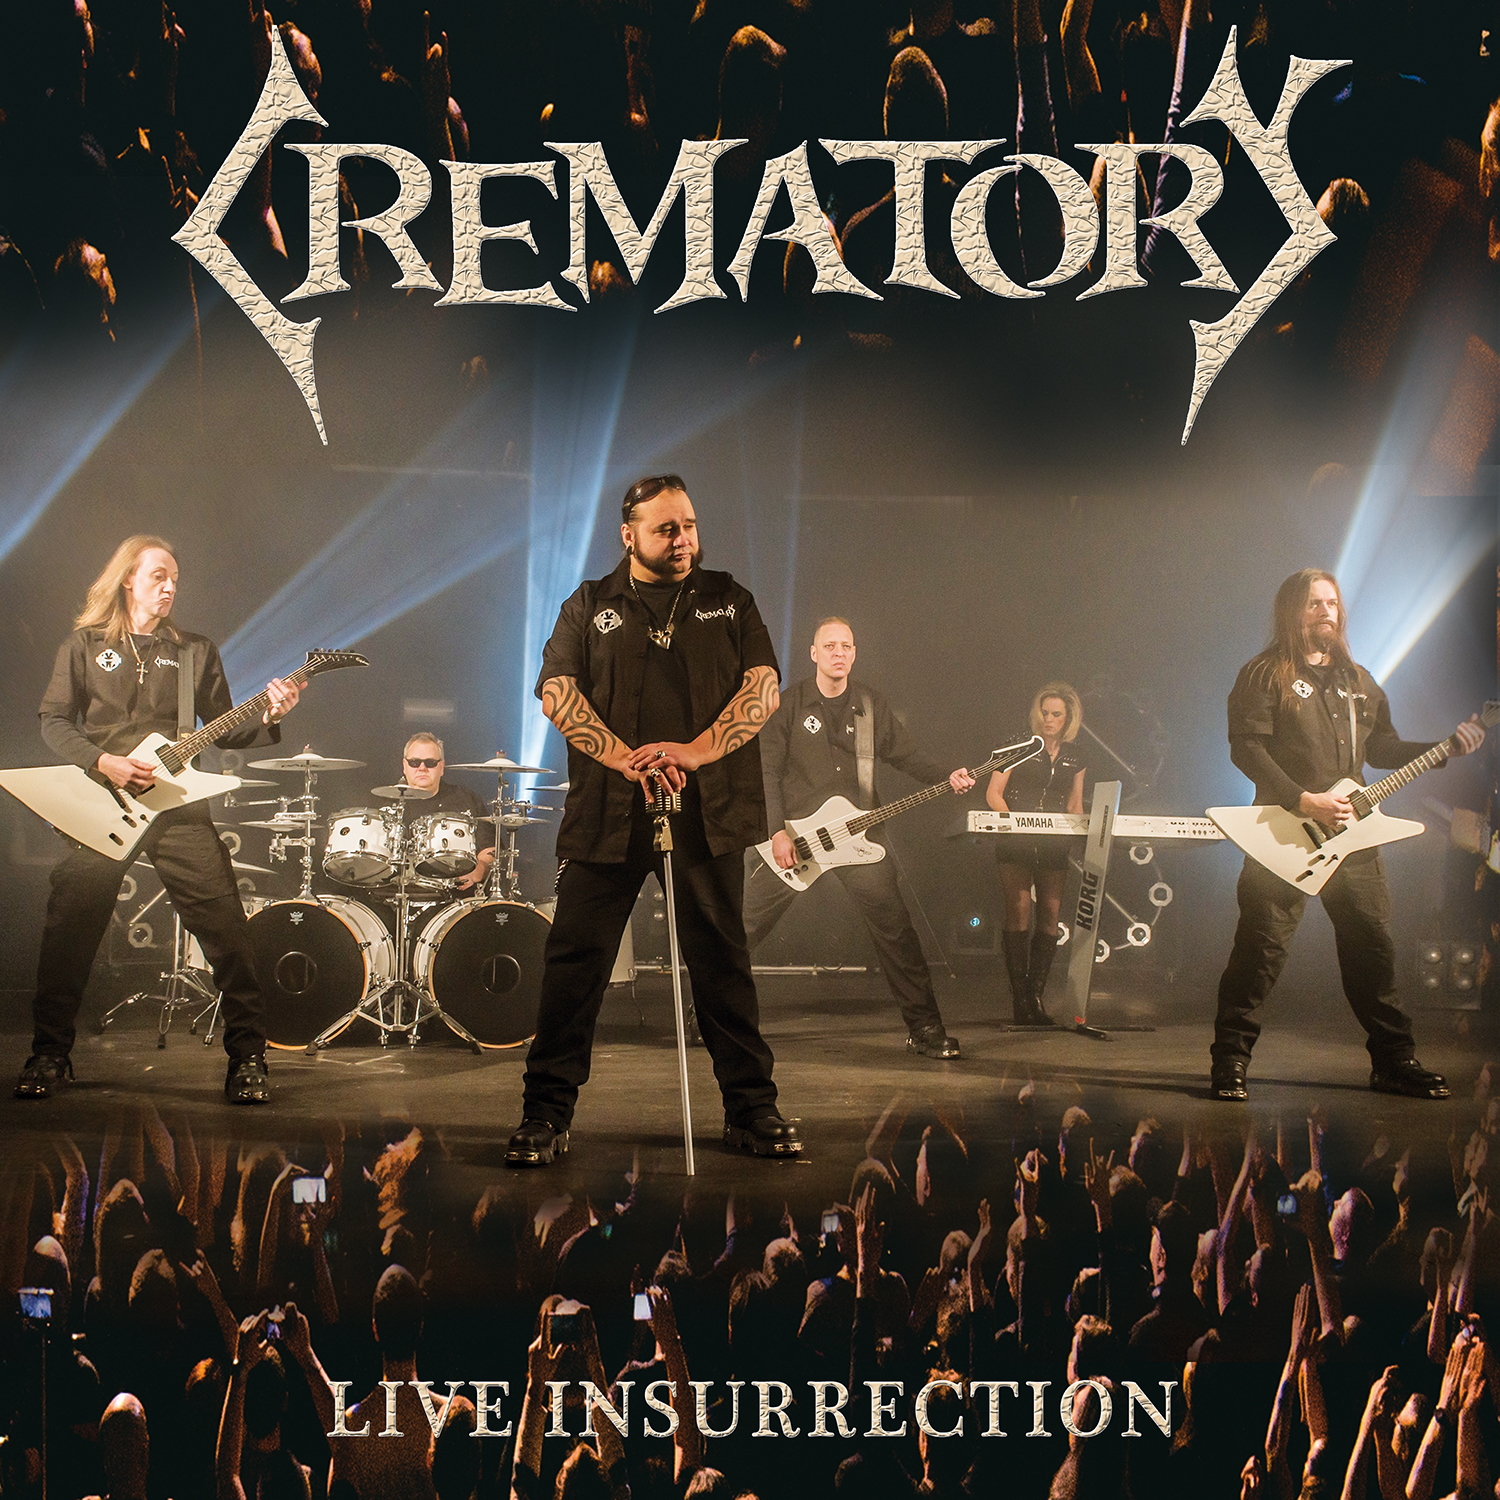 CREMATORY (DE) – Live Insurrection